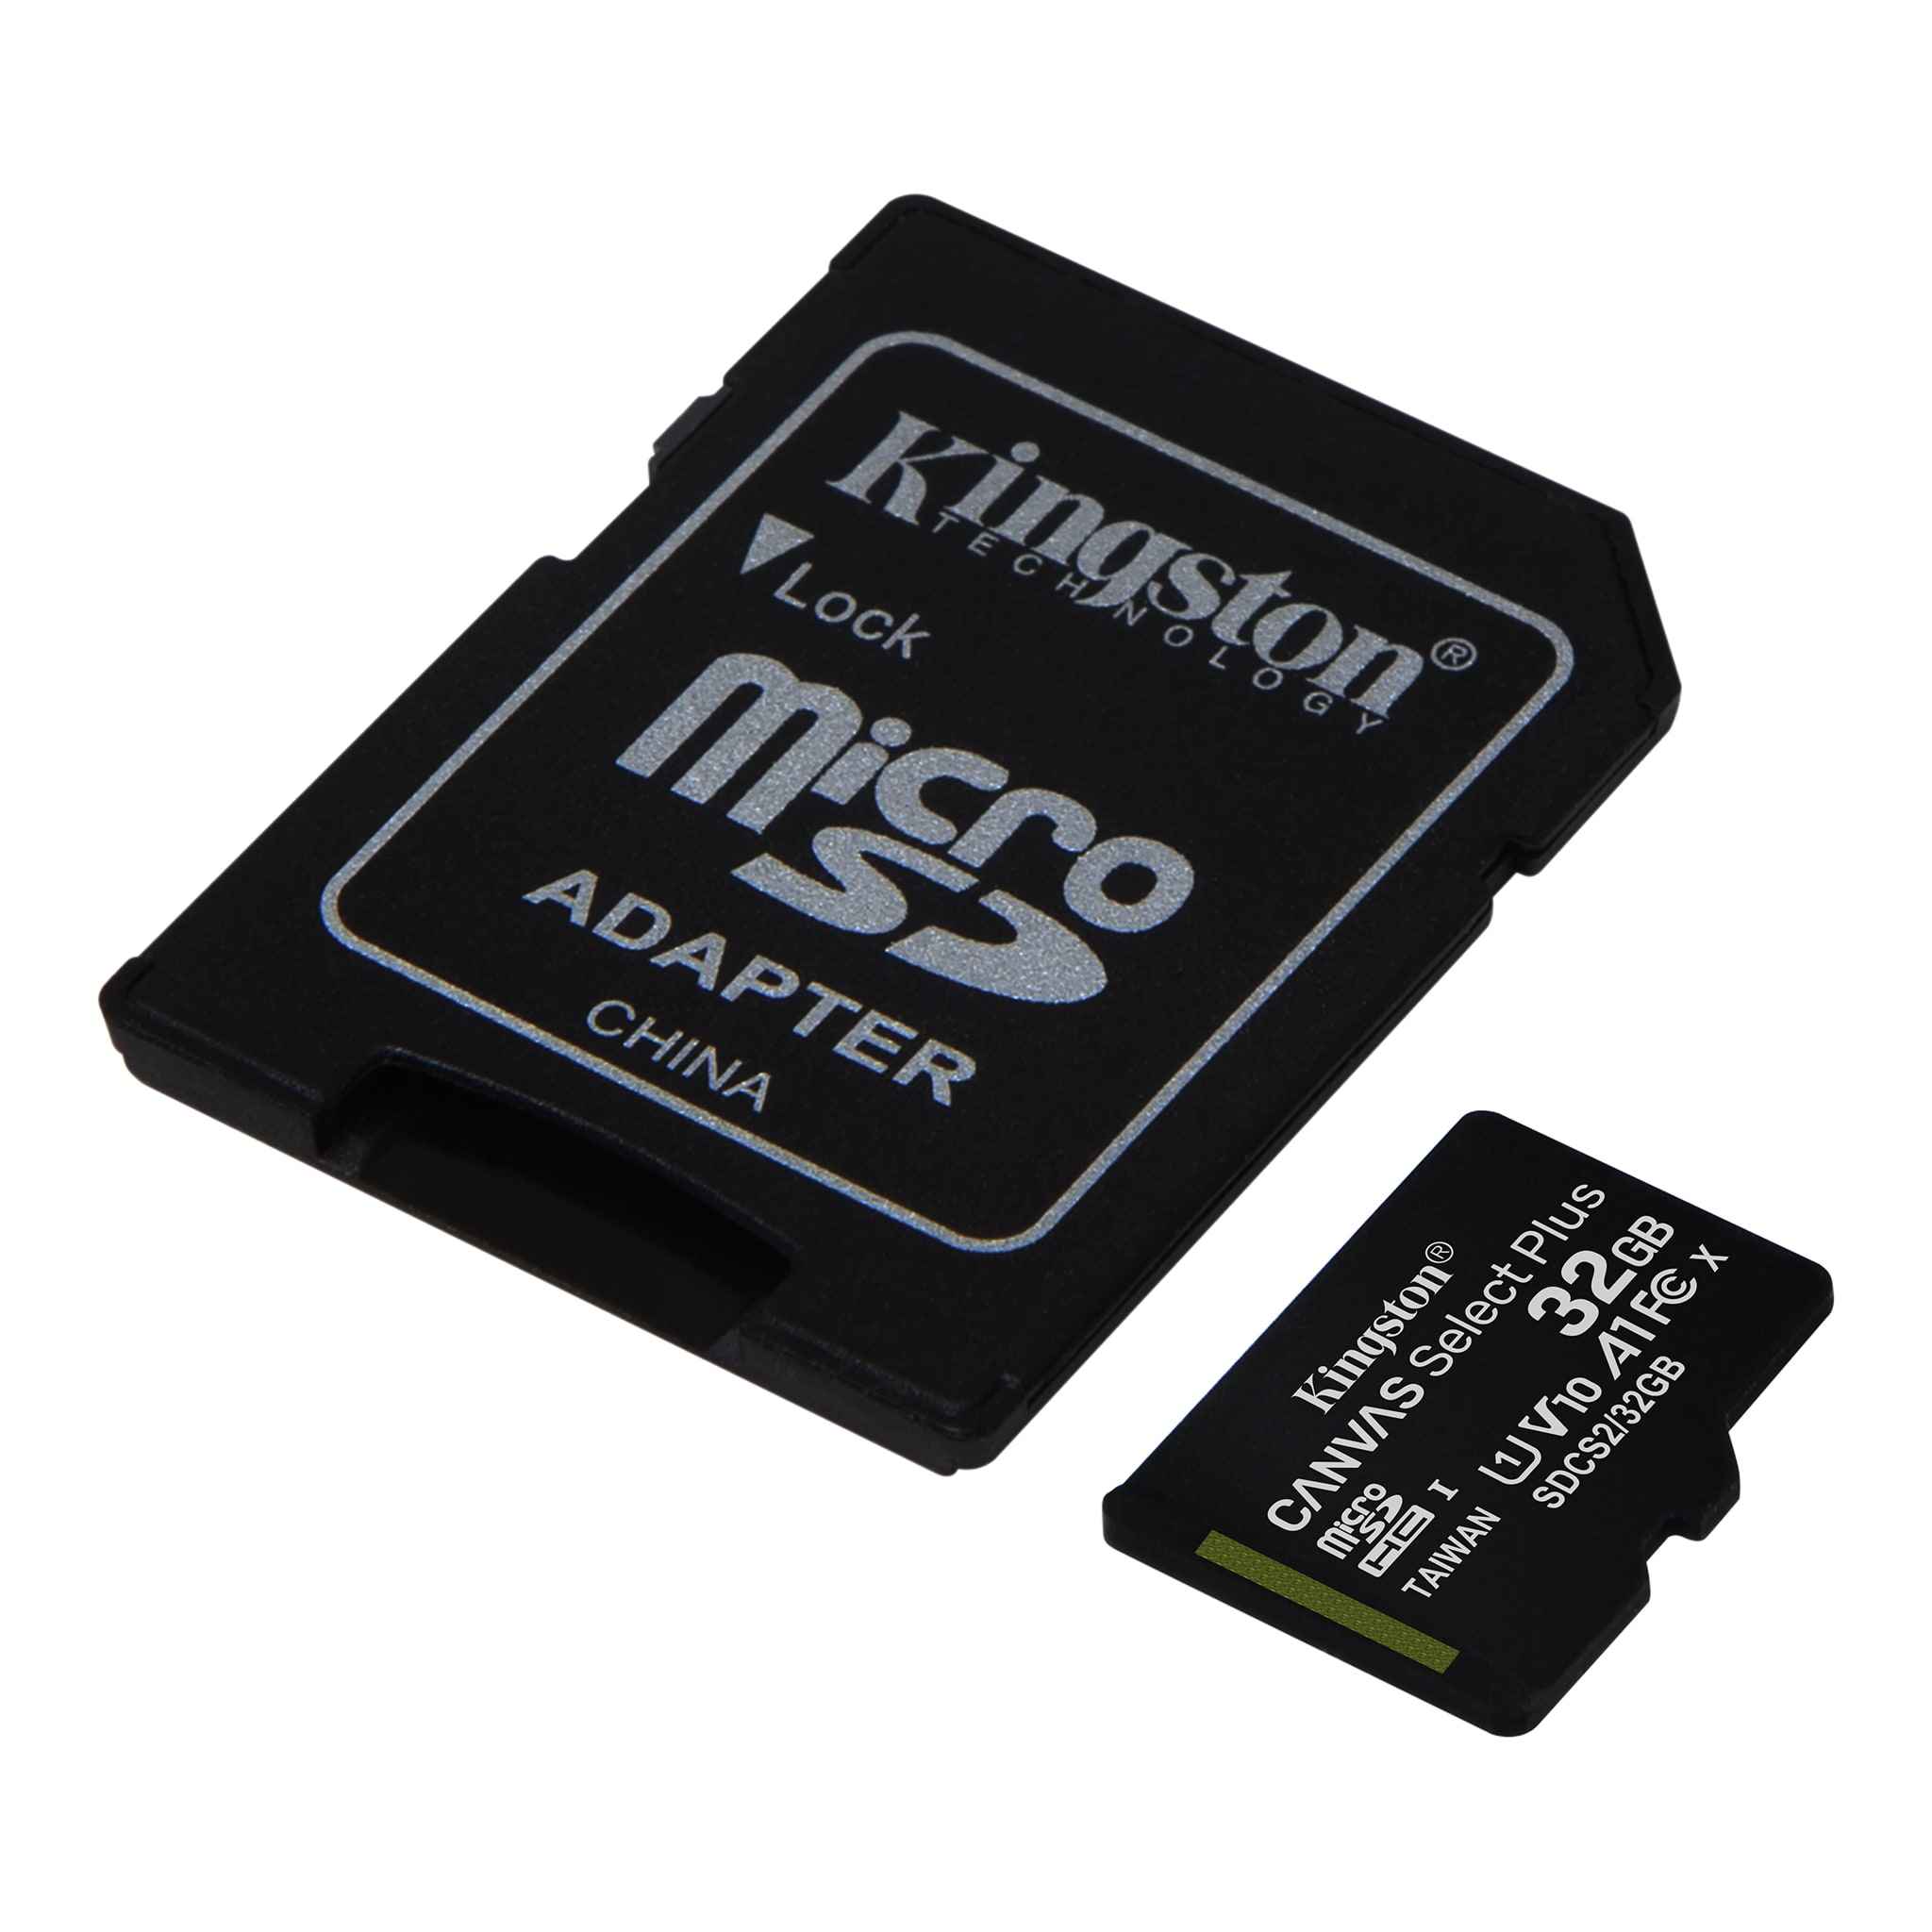 Kingston Canvas Select Plus SDCS2/32GB Scheda microSD Classe 10 con Adattator...